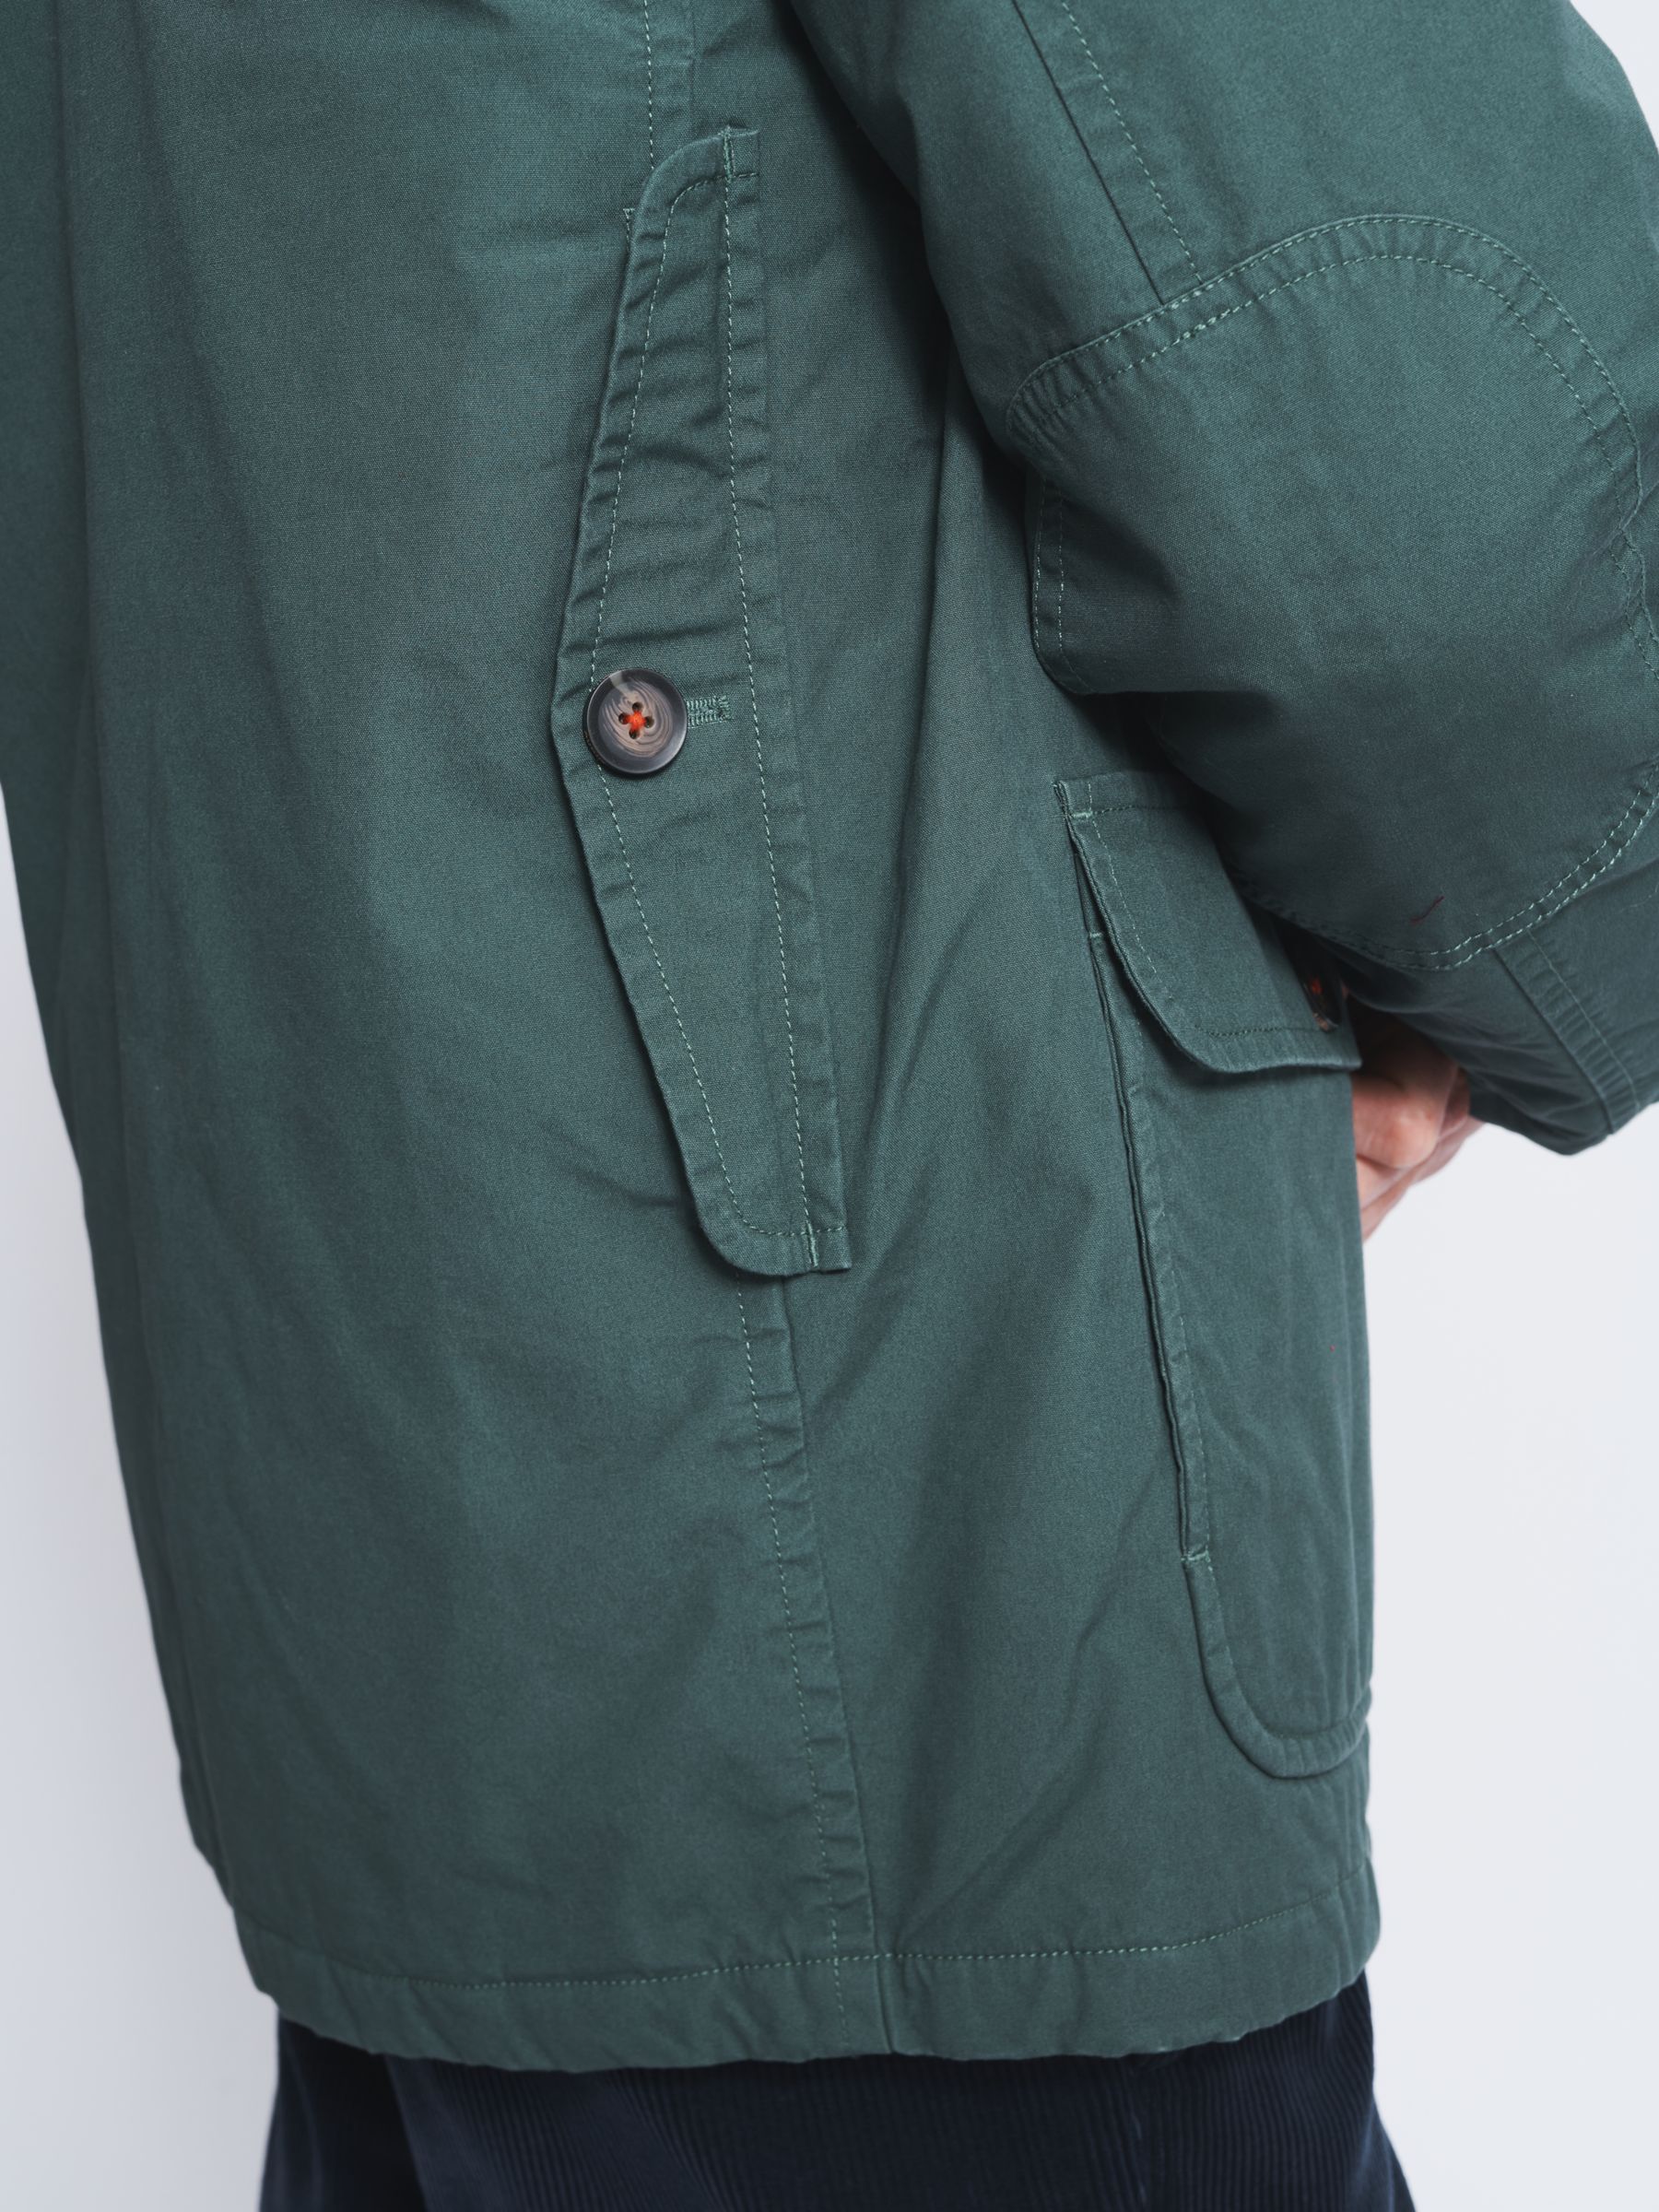 Aubin Rowen Jacket, Dark Green, XXL